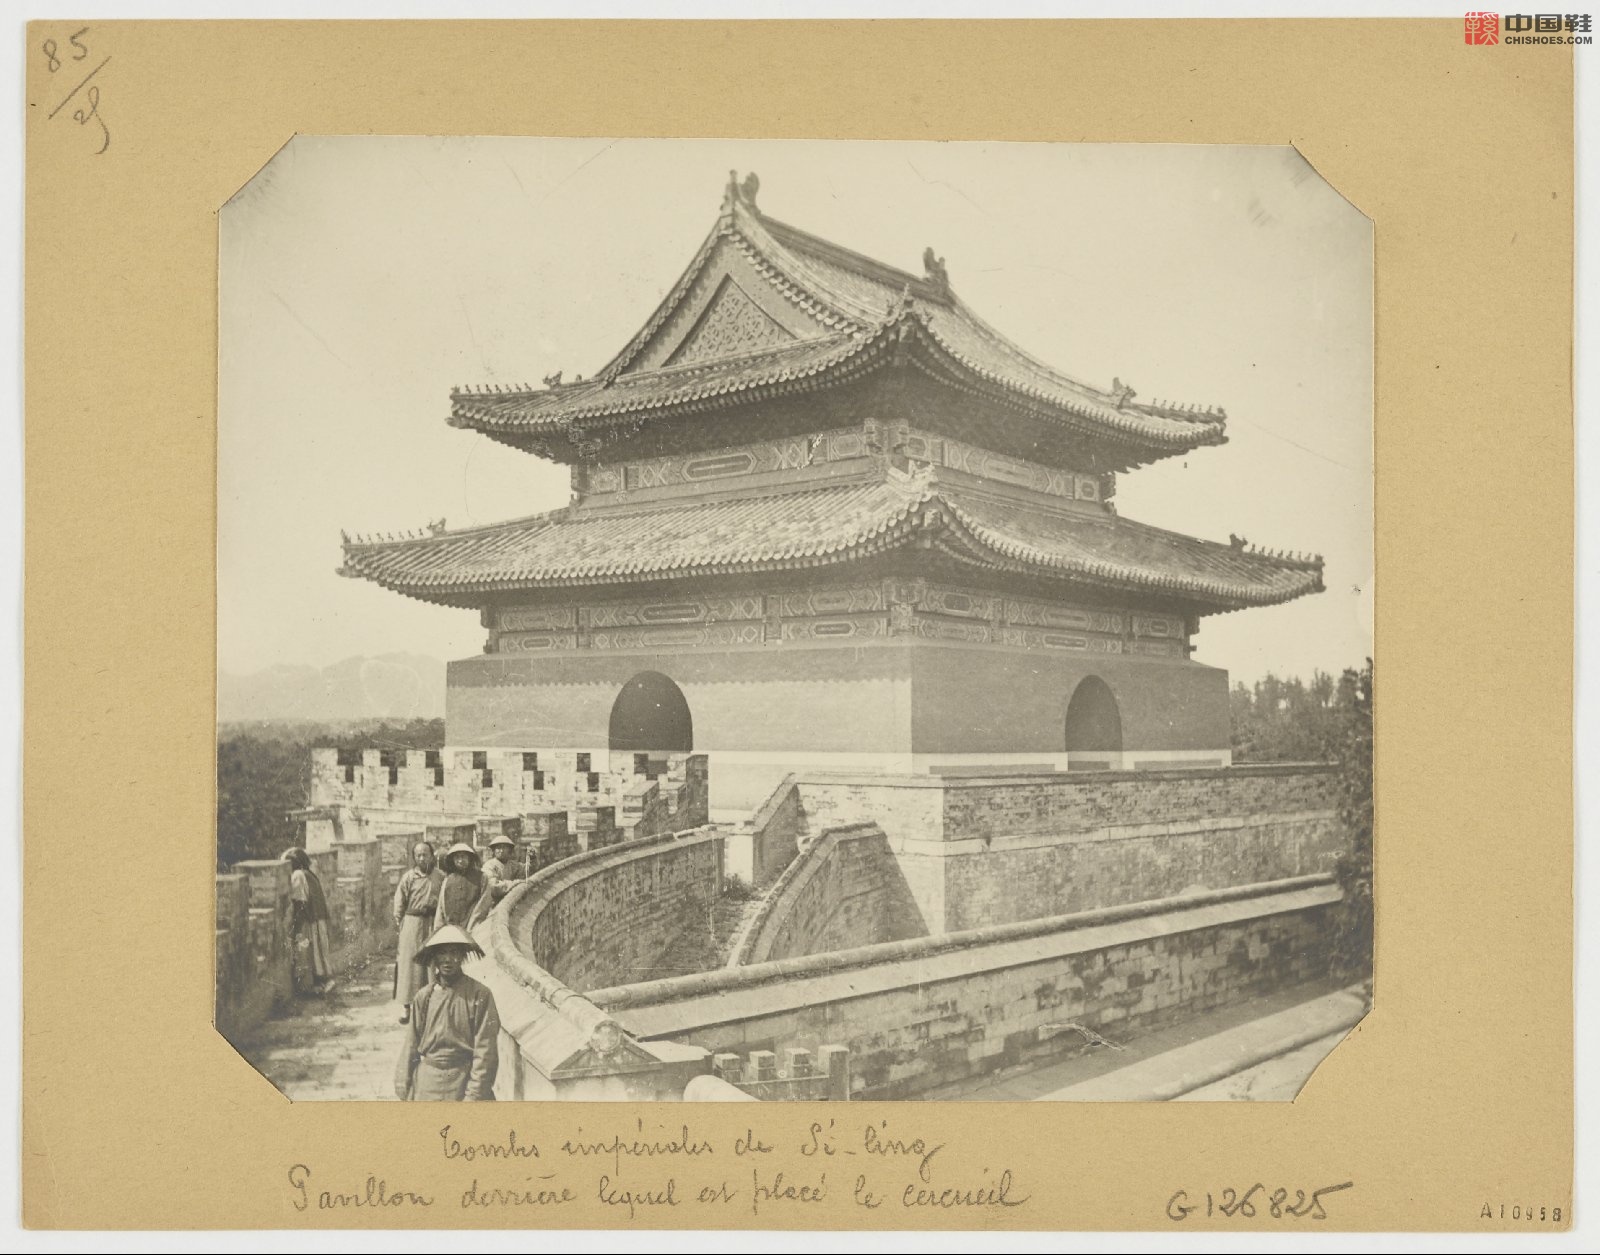 拉里贝的中国影像记录.415幅.By Firmin Laribe.1900-1910年_Page_299.jpg